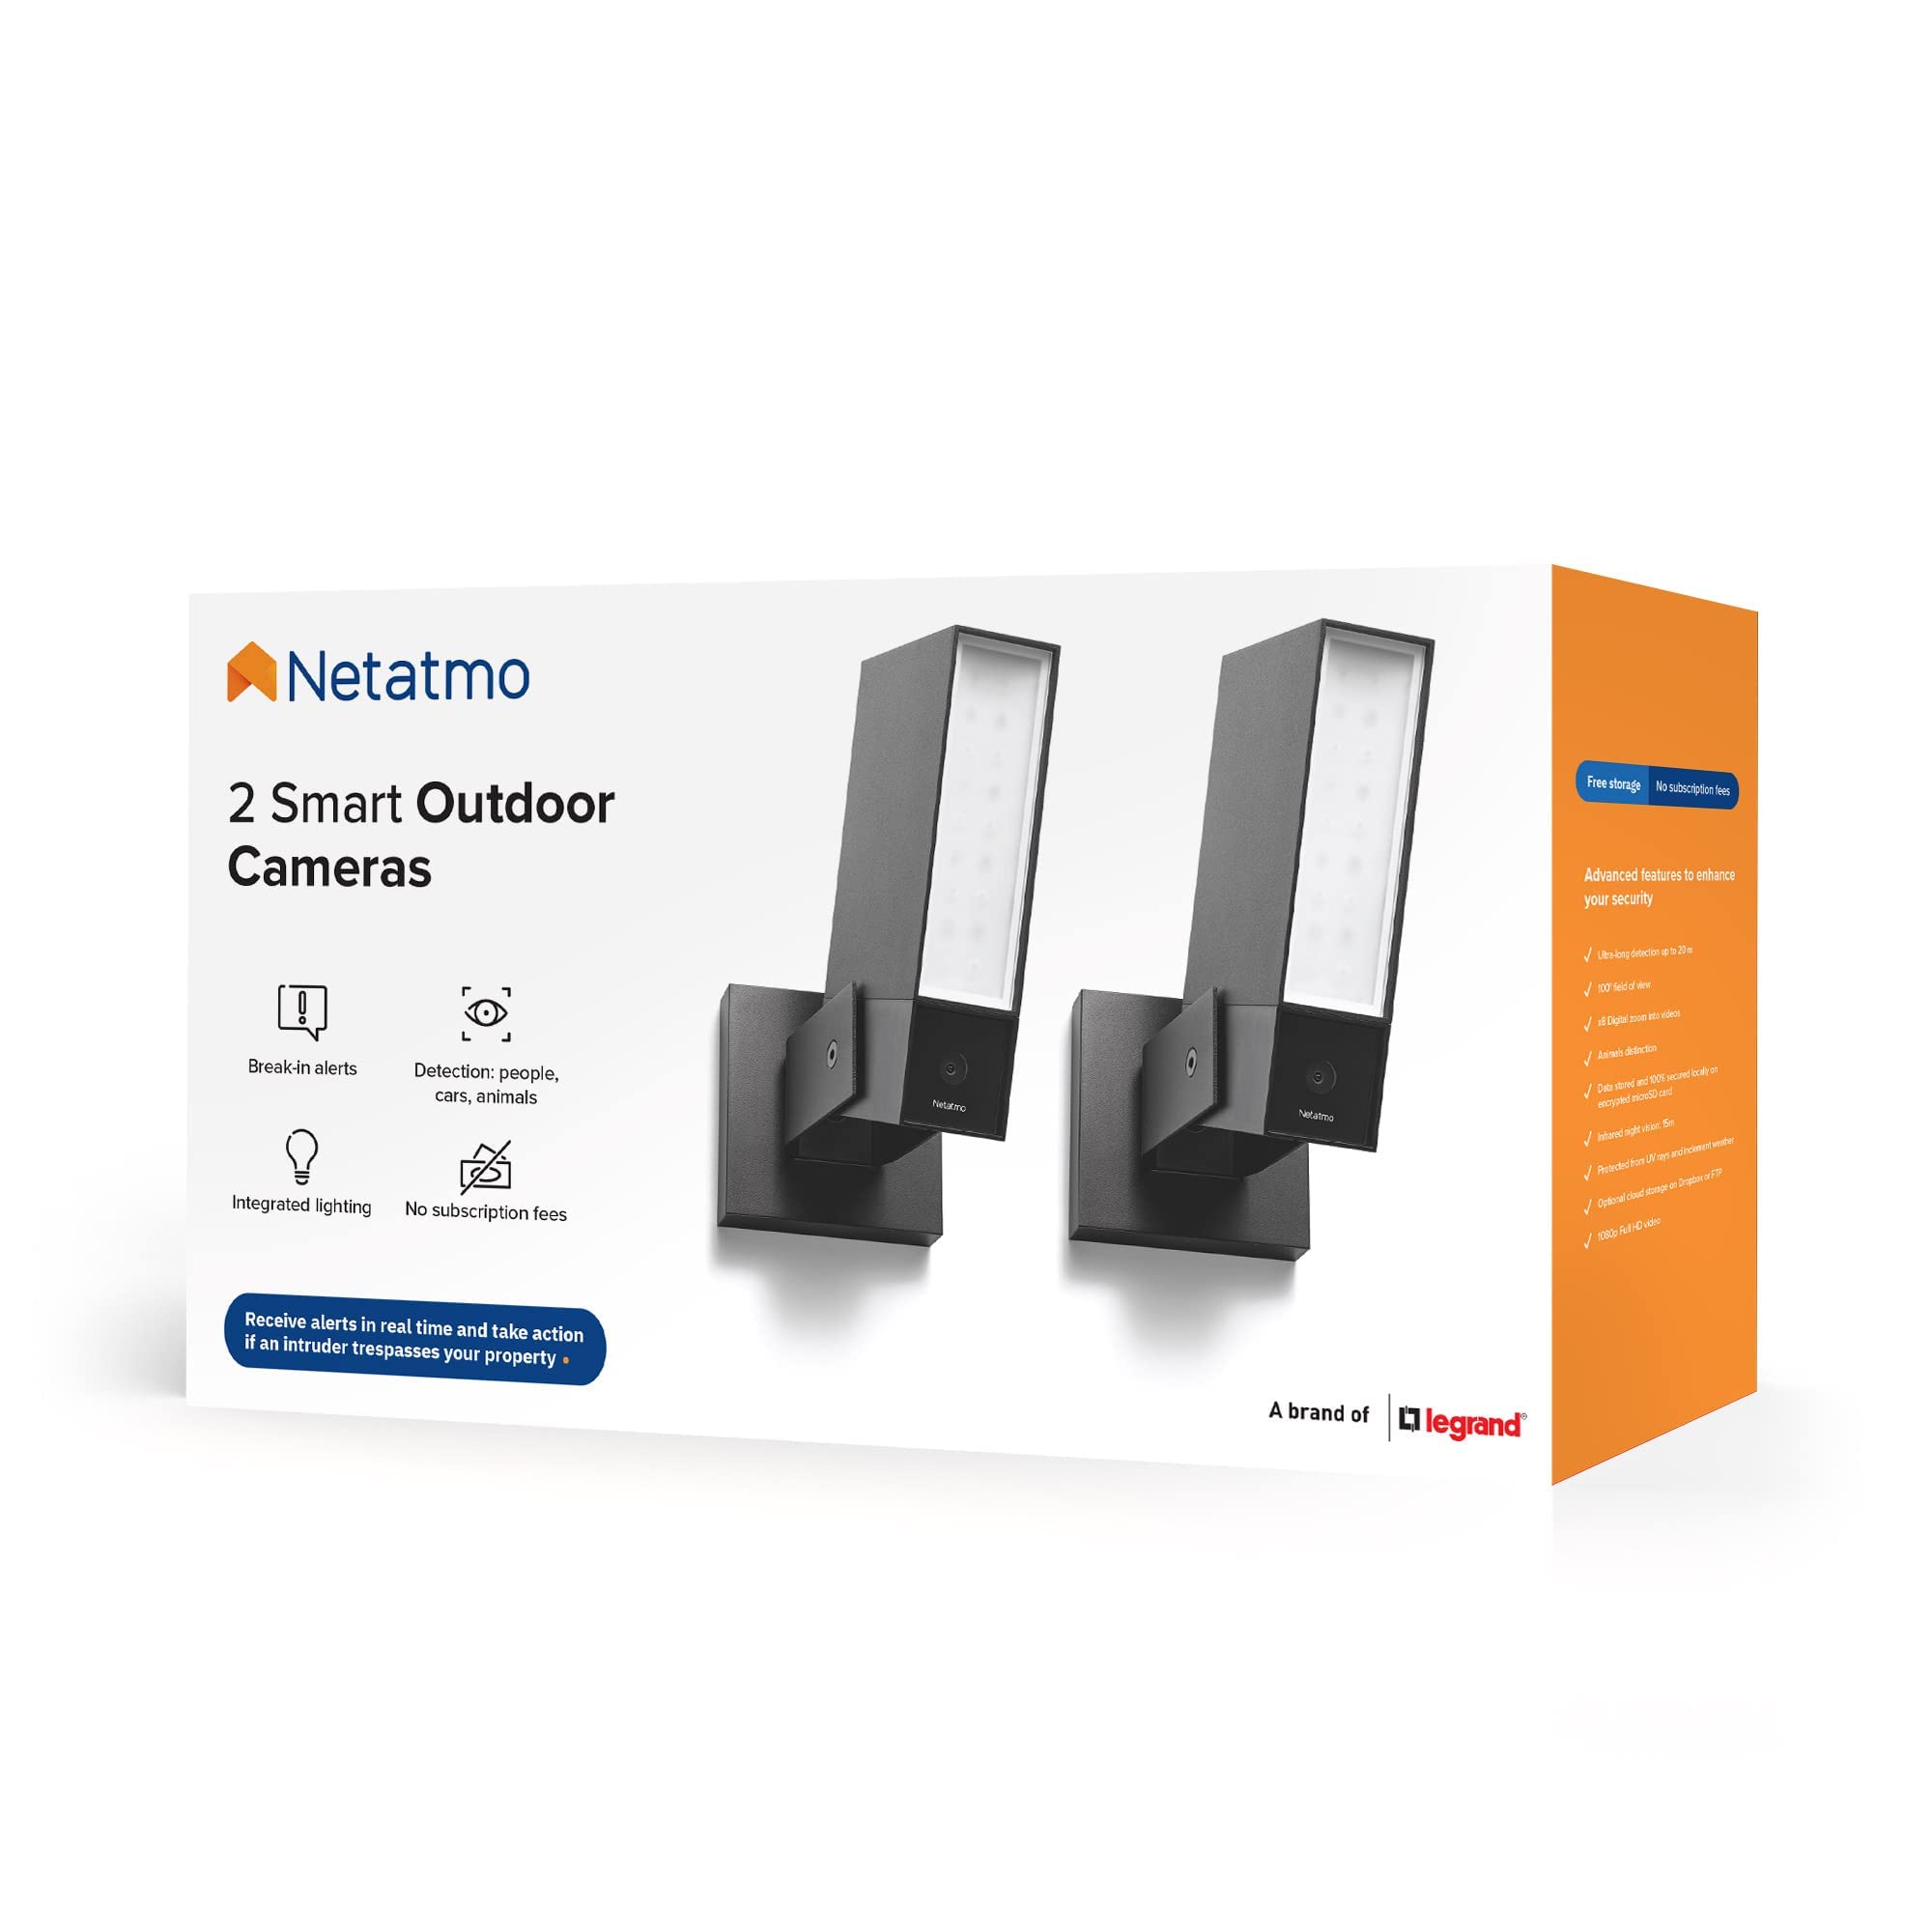 Netatmo Paket mit 2 Outdoor-Kameras, WLAN, Integrierte Beleuchtung, Bewegungserkennung, Nachtsicht, Ohne Abonnement, NBU-2-NOC-AMZ, Schwarz, Paket mit 2 Stück, 1920p